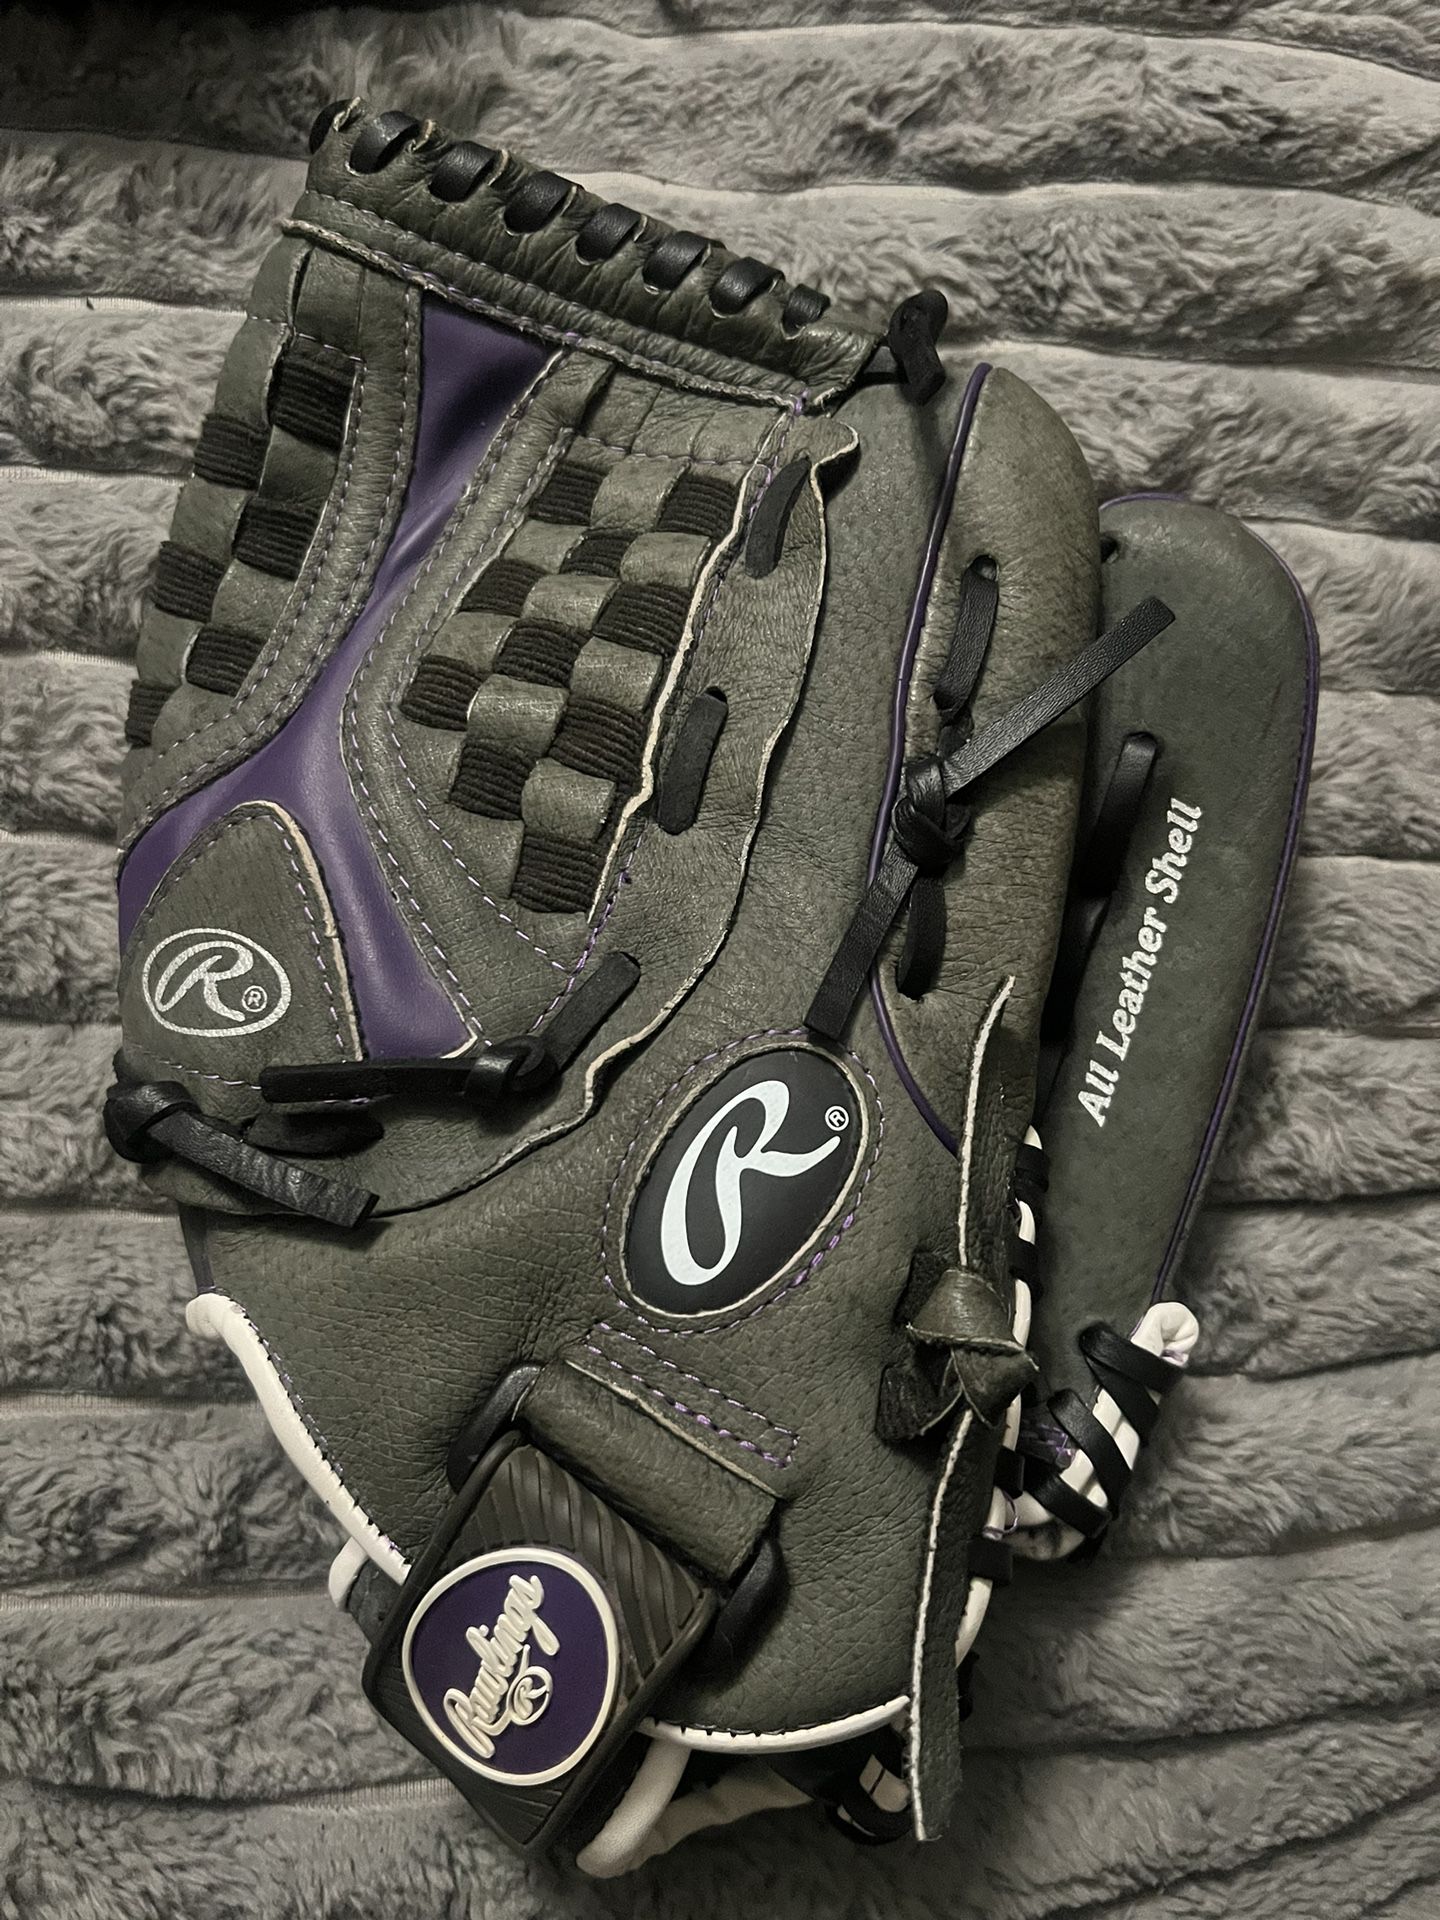 Rawlings Storm Fast Pitch Softball Glove